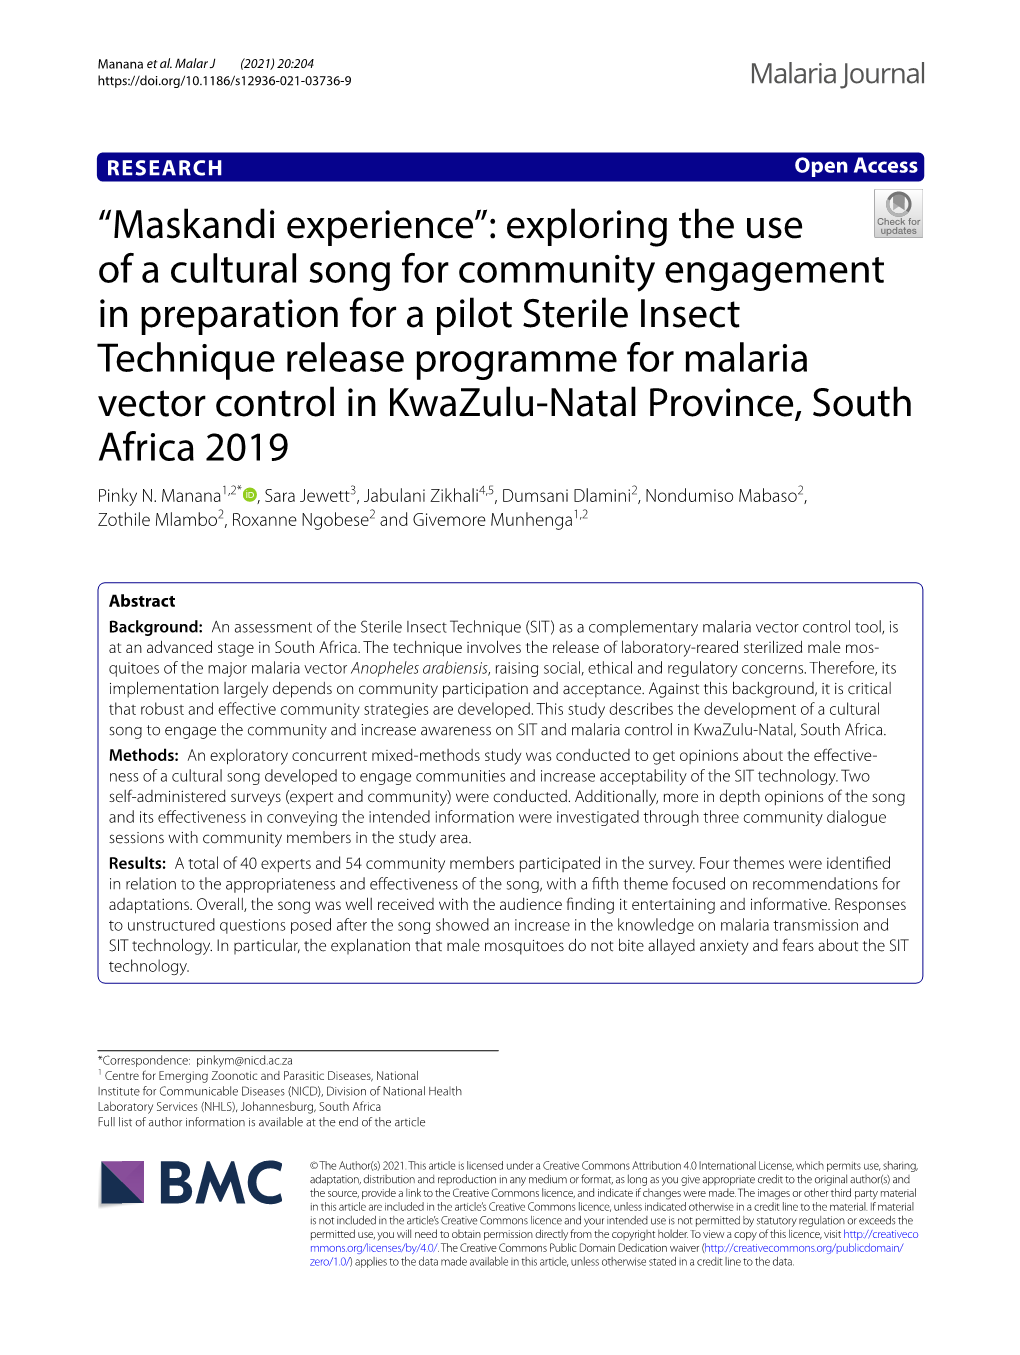 Maskandi Experience